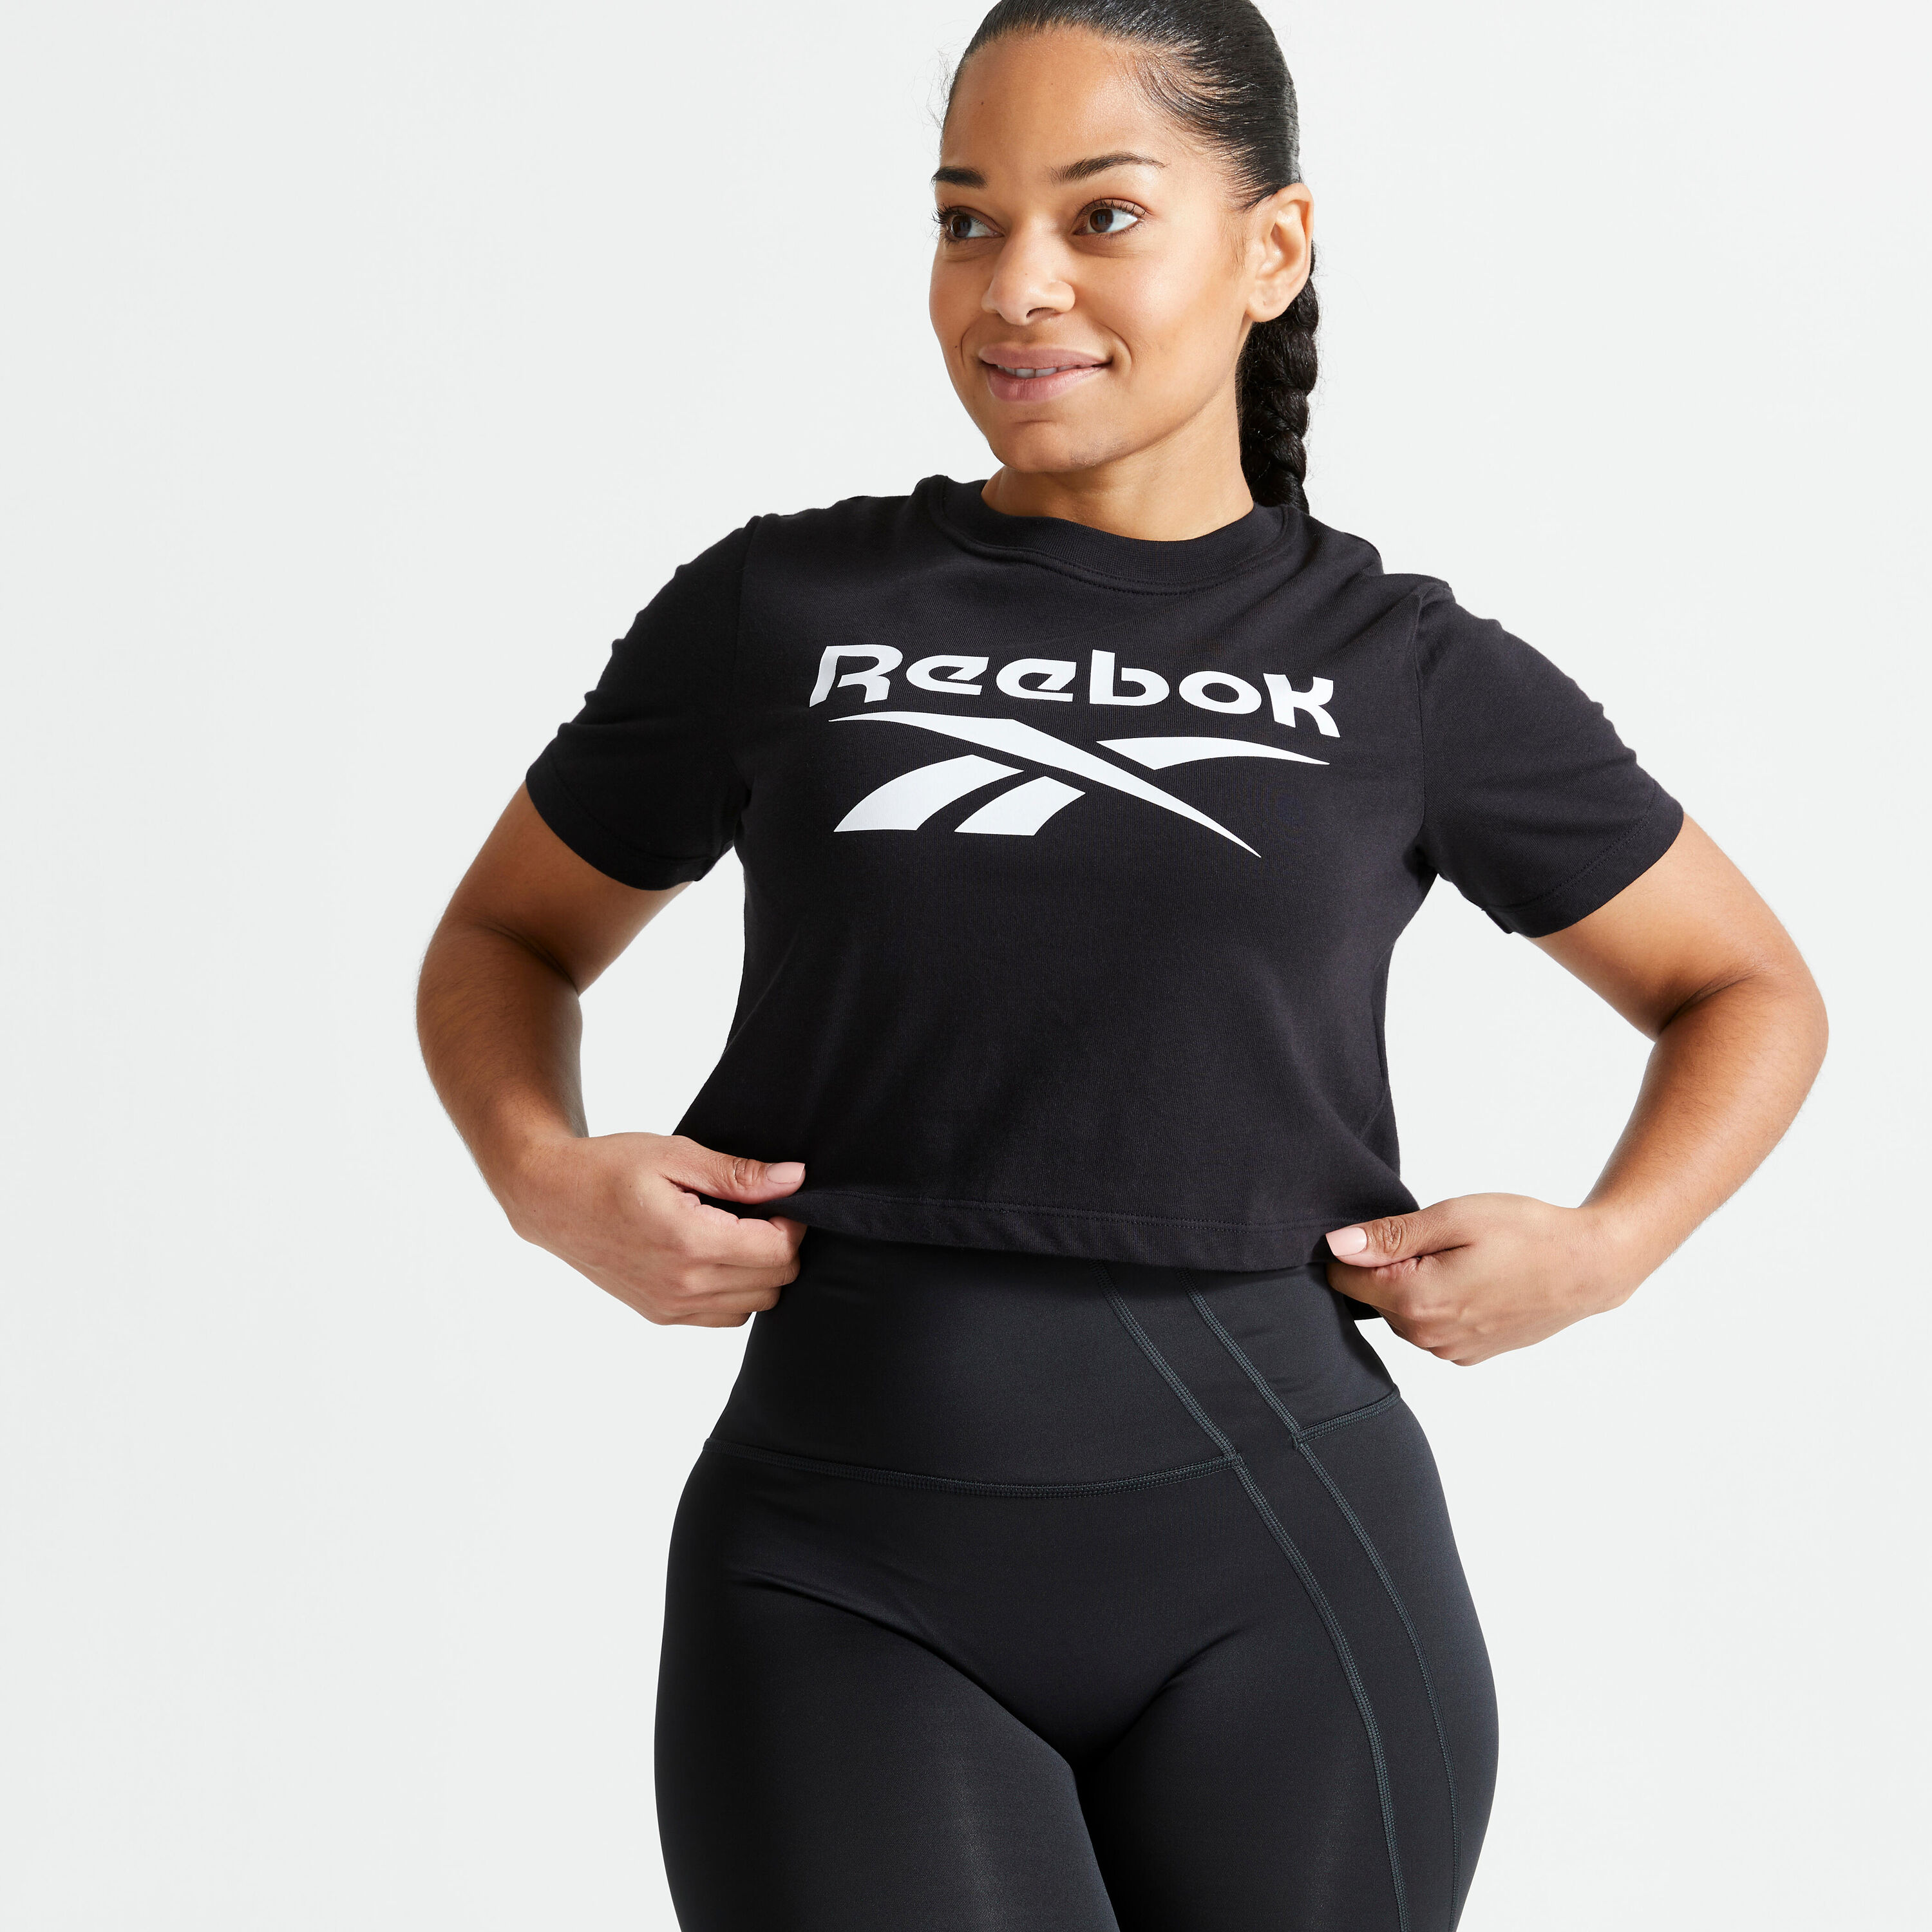 REEBOK Women's Short-Sleeved Crop Top Fitness T-Shirt - Black